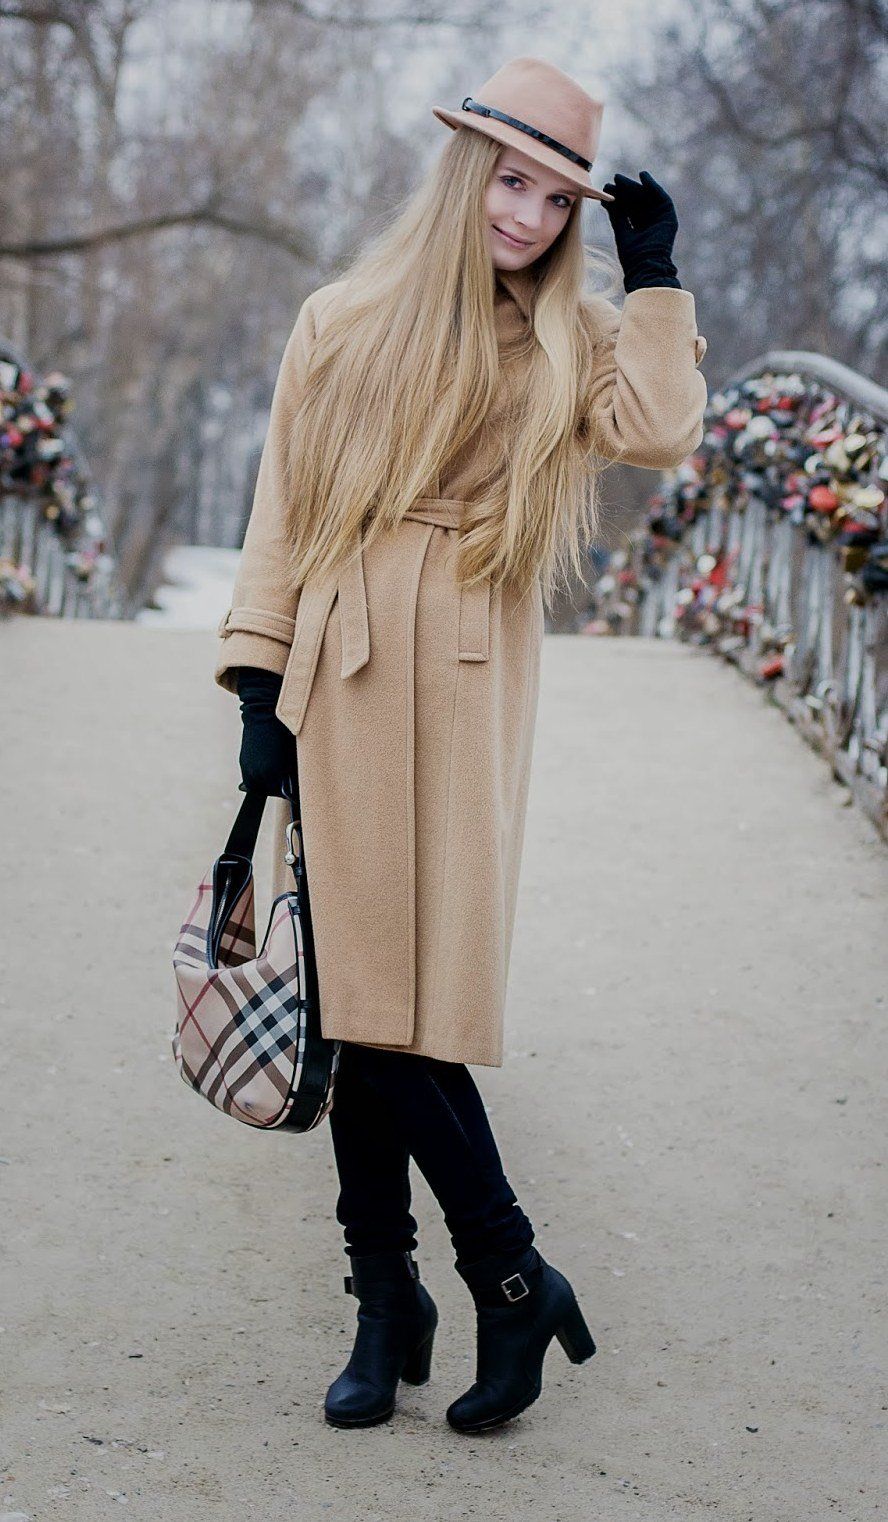 Блондинка в бежевом пальто